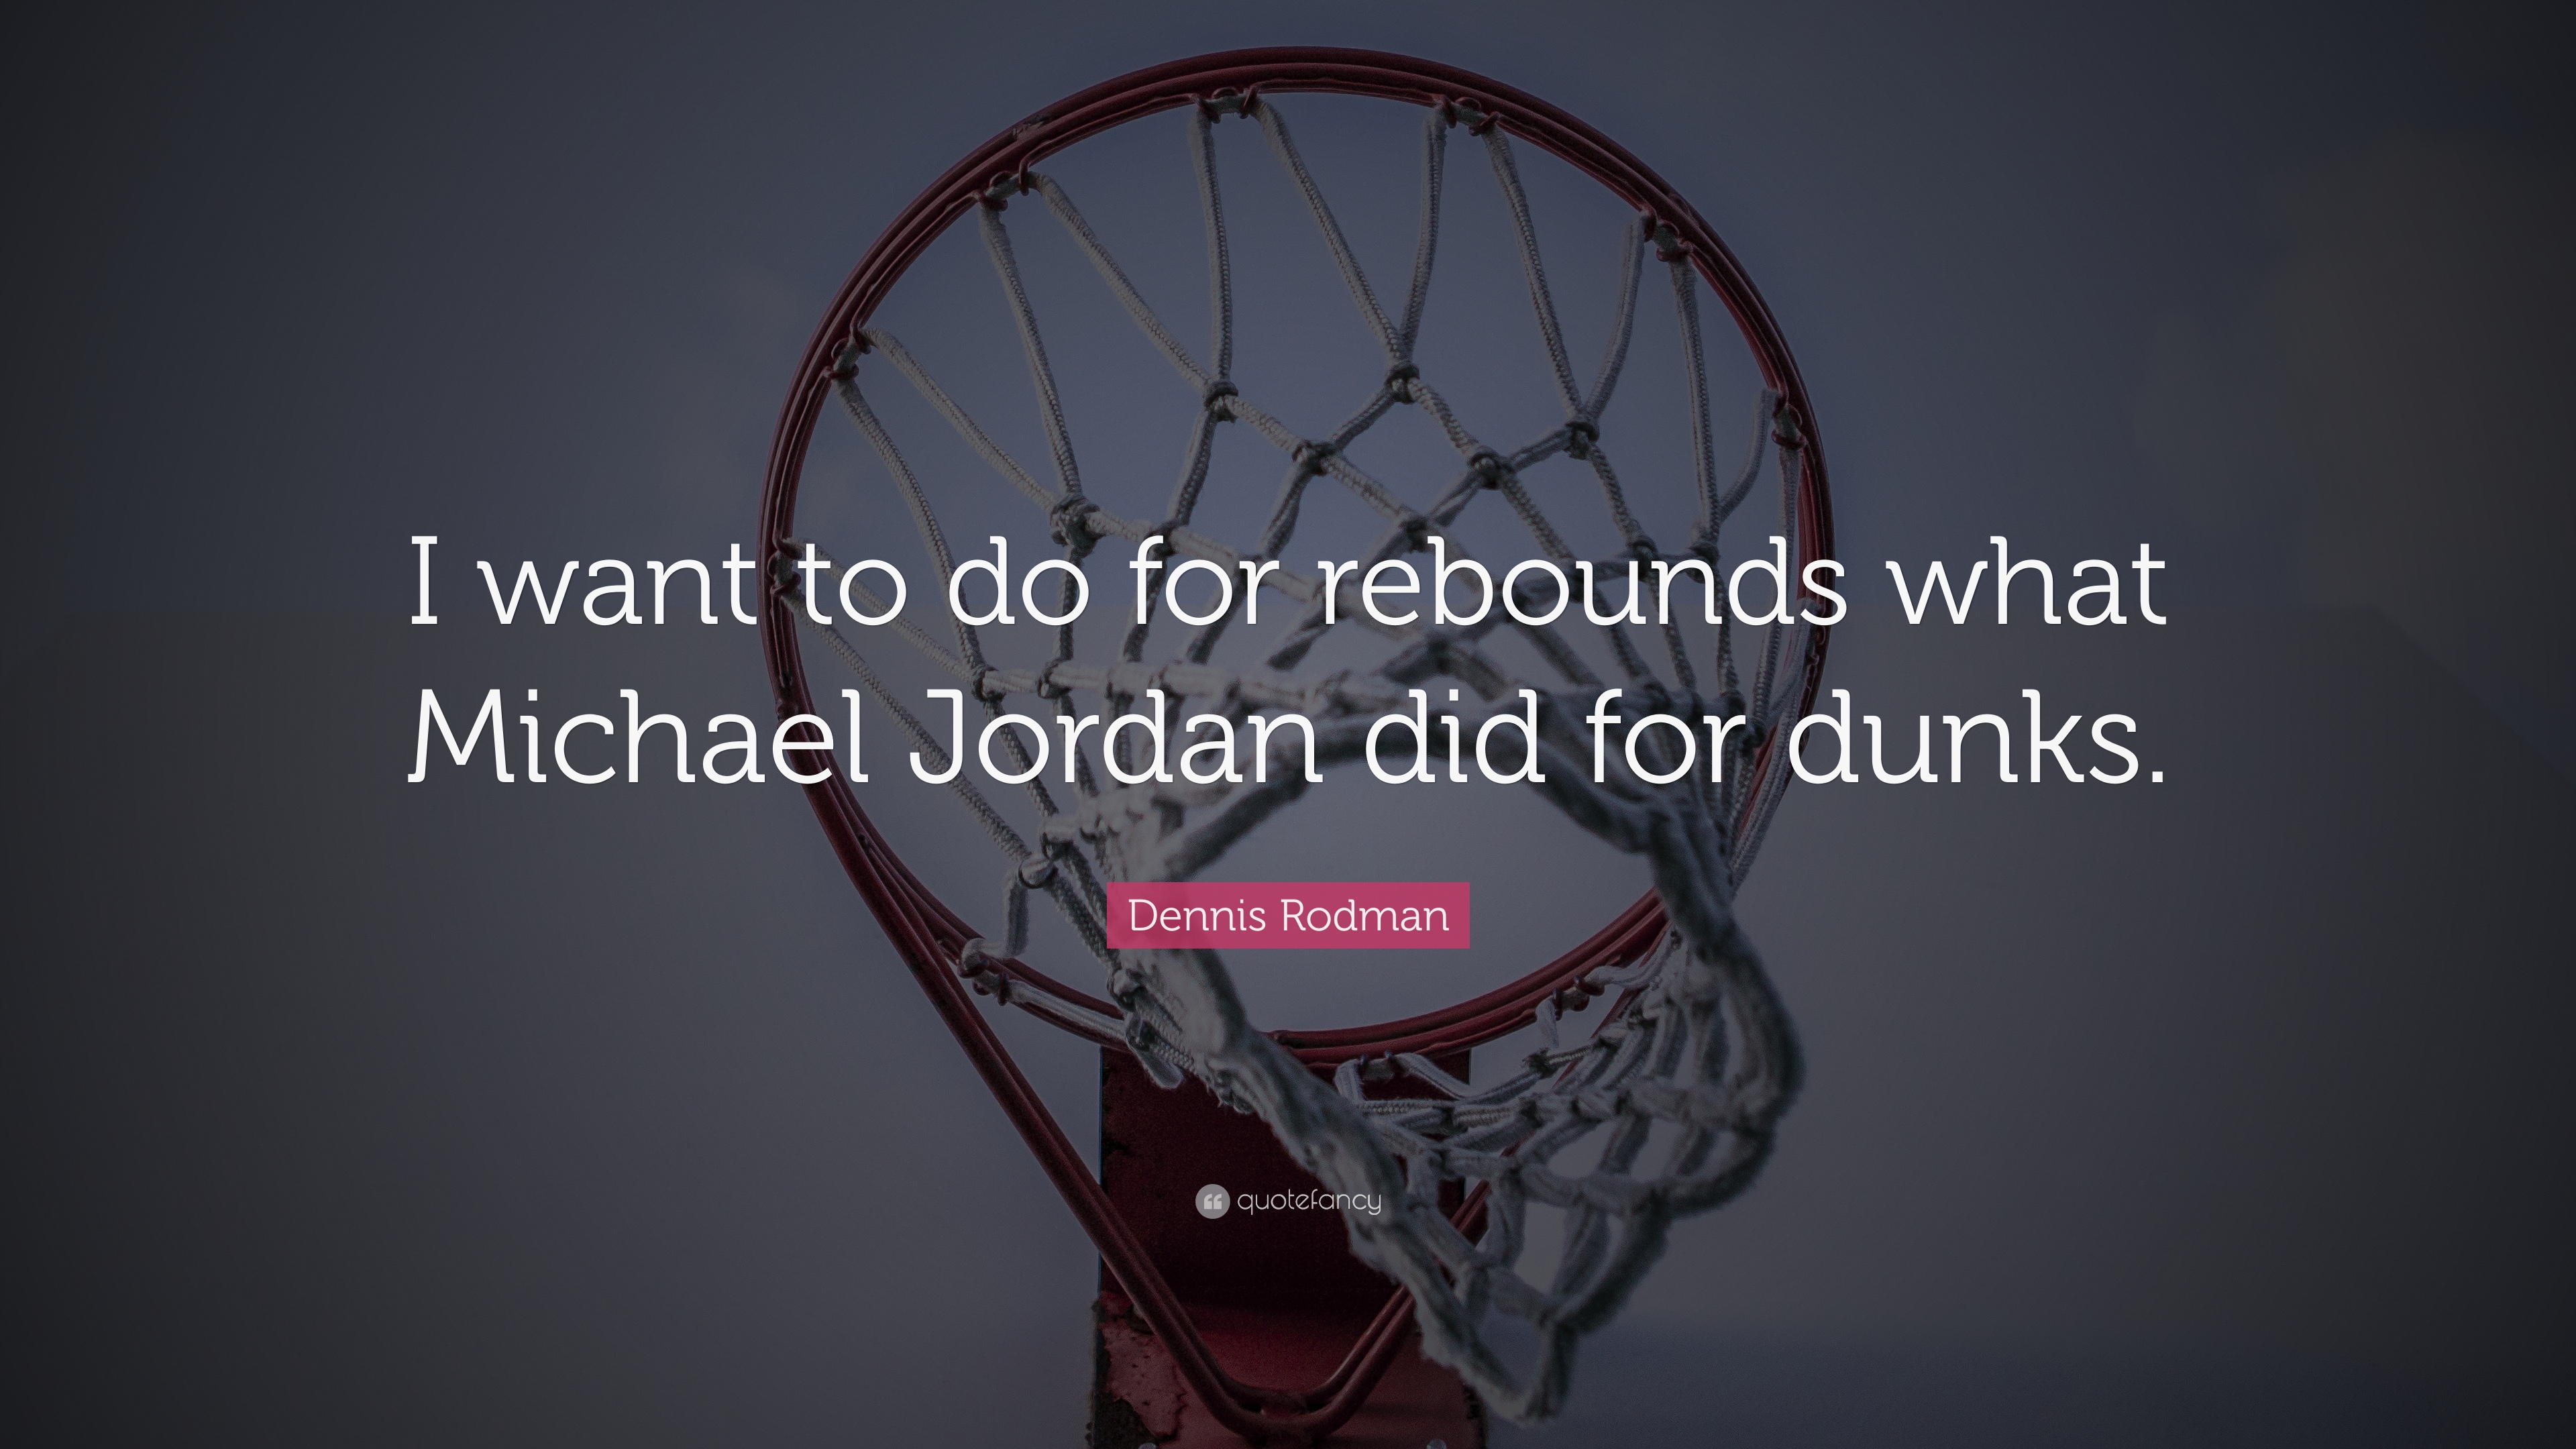 Michael Jordan Quote HD Wallpaper